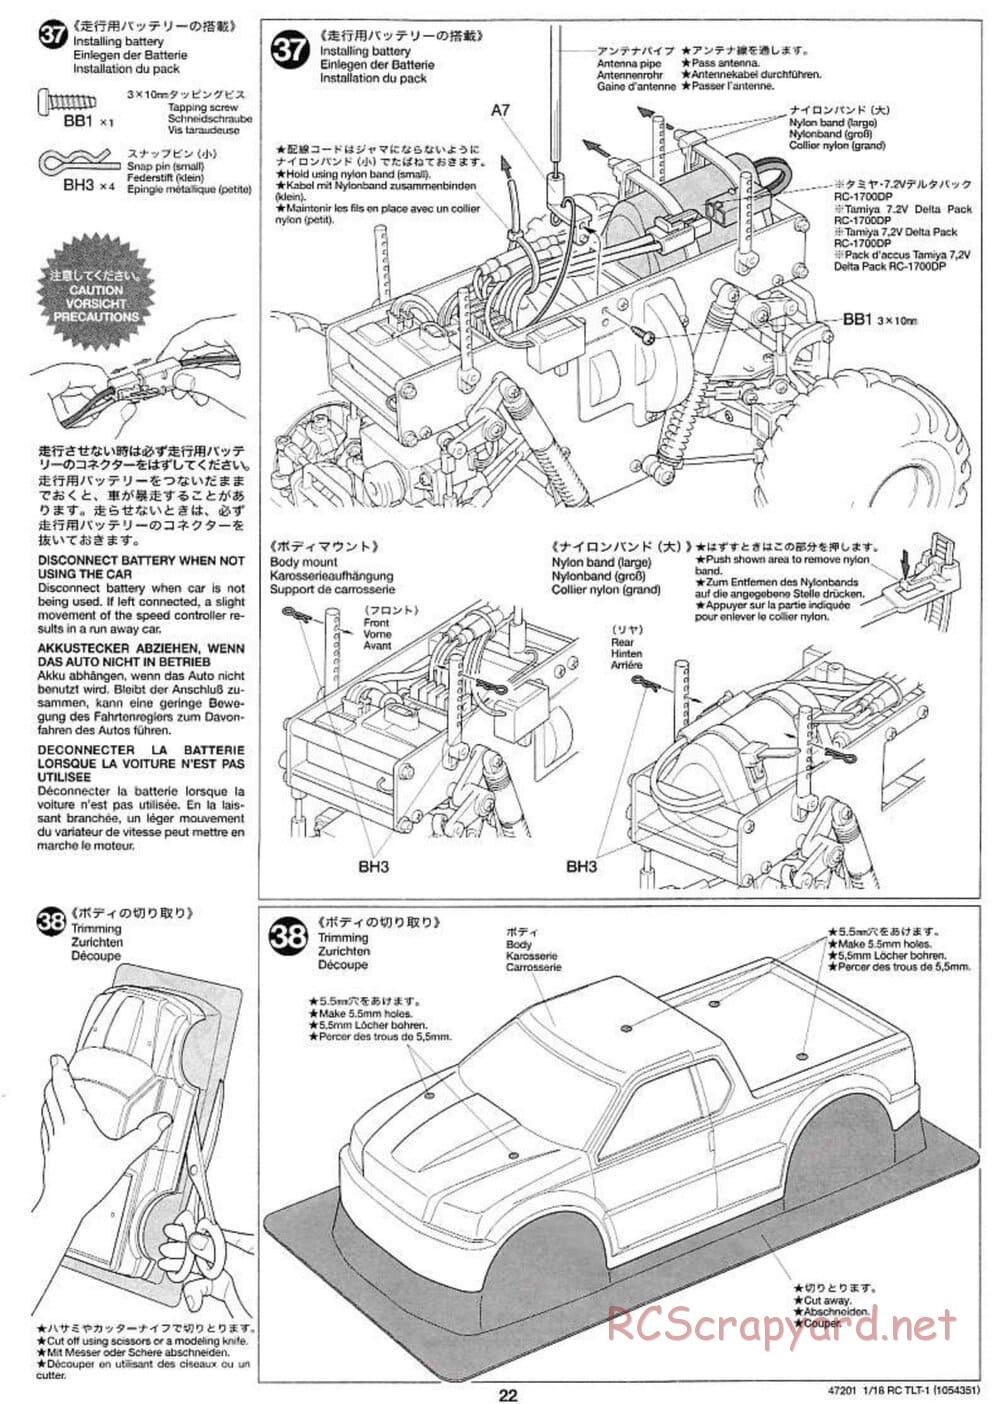 Tamiya - Rock Buster - TLT-1 Chassis - Manual - Page 22